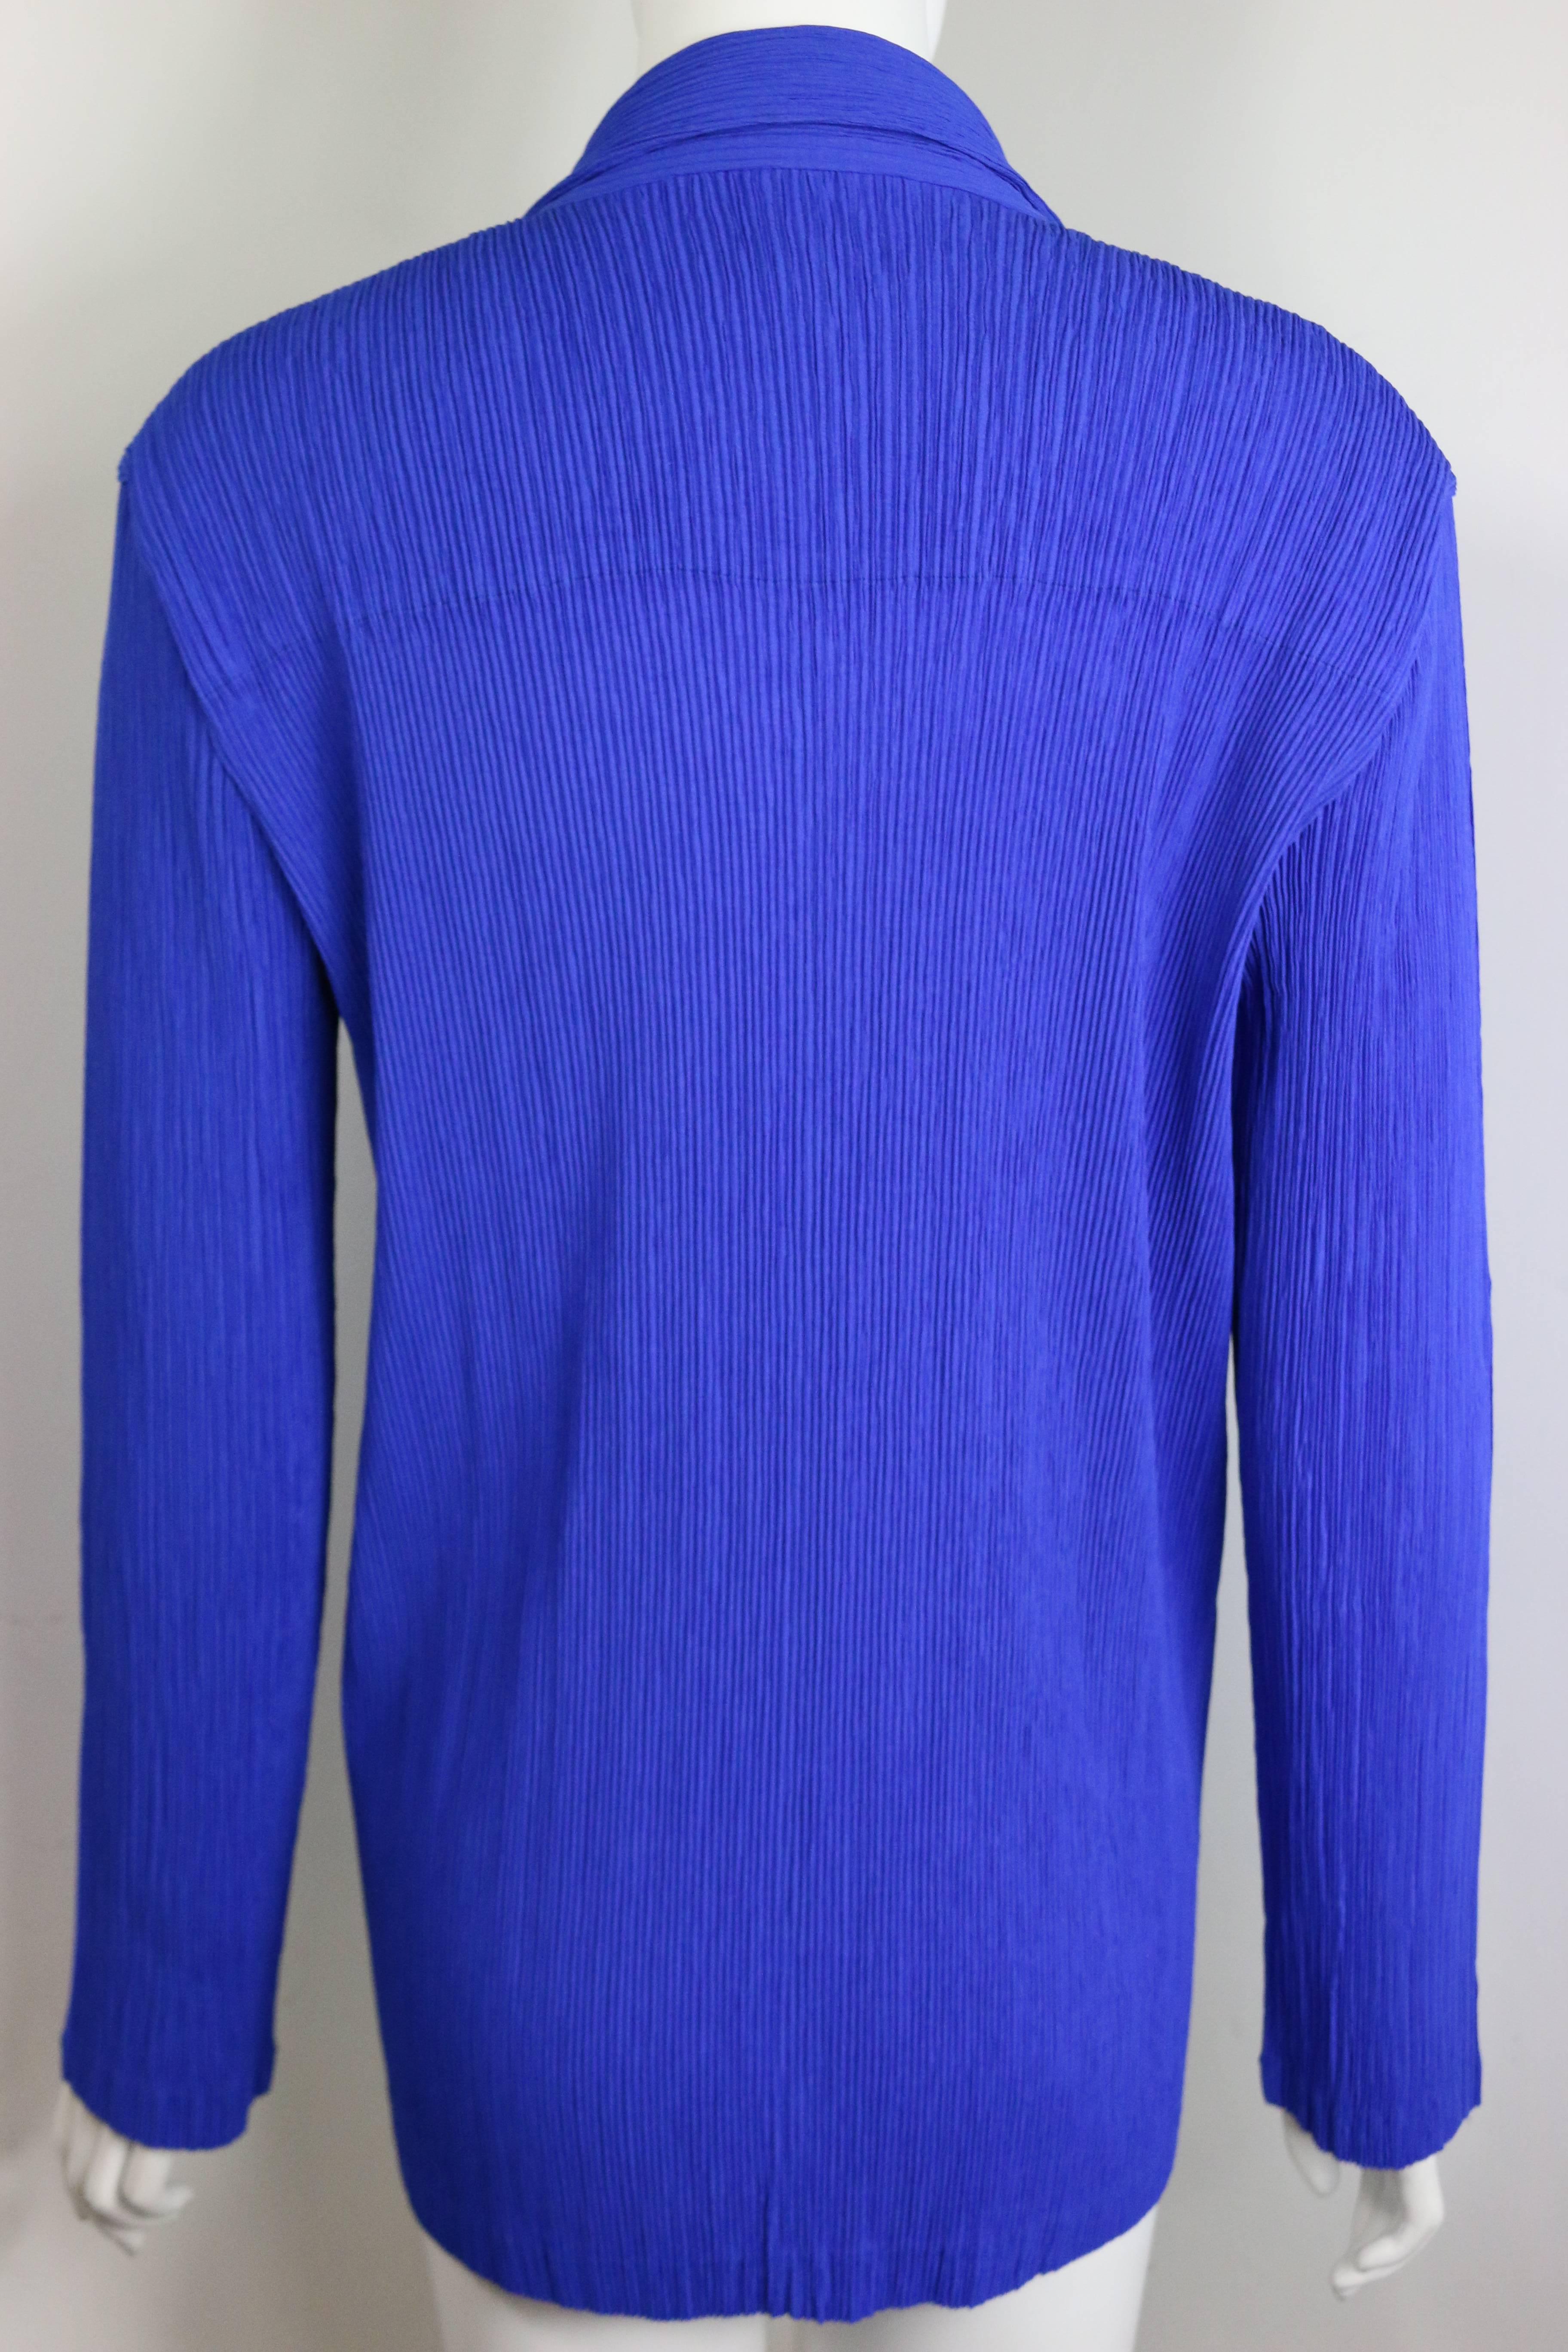 - Blaue Plissee-Jacke von Issey Miyake. Unterschrift plissiert mit markanter Farbe blau. 

- Mit drei Knöpfen zum Schließen. 

- Hergestellt in Japan. 

- Größe M. 

- 100% Polyaster. 

